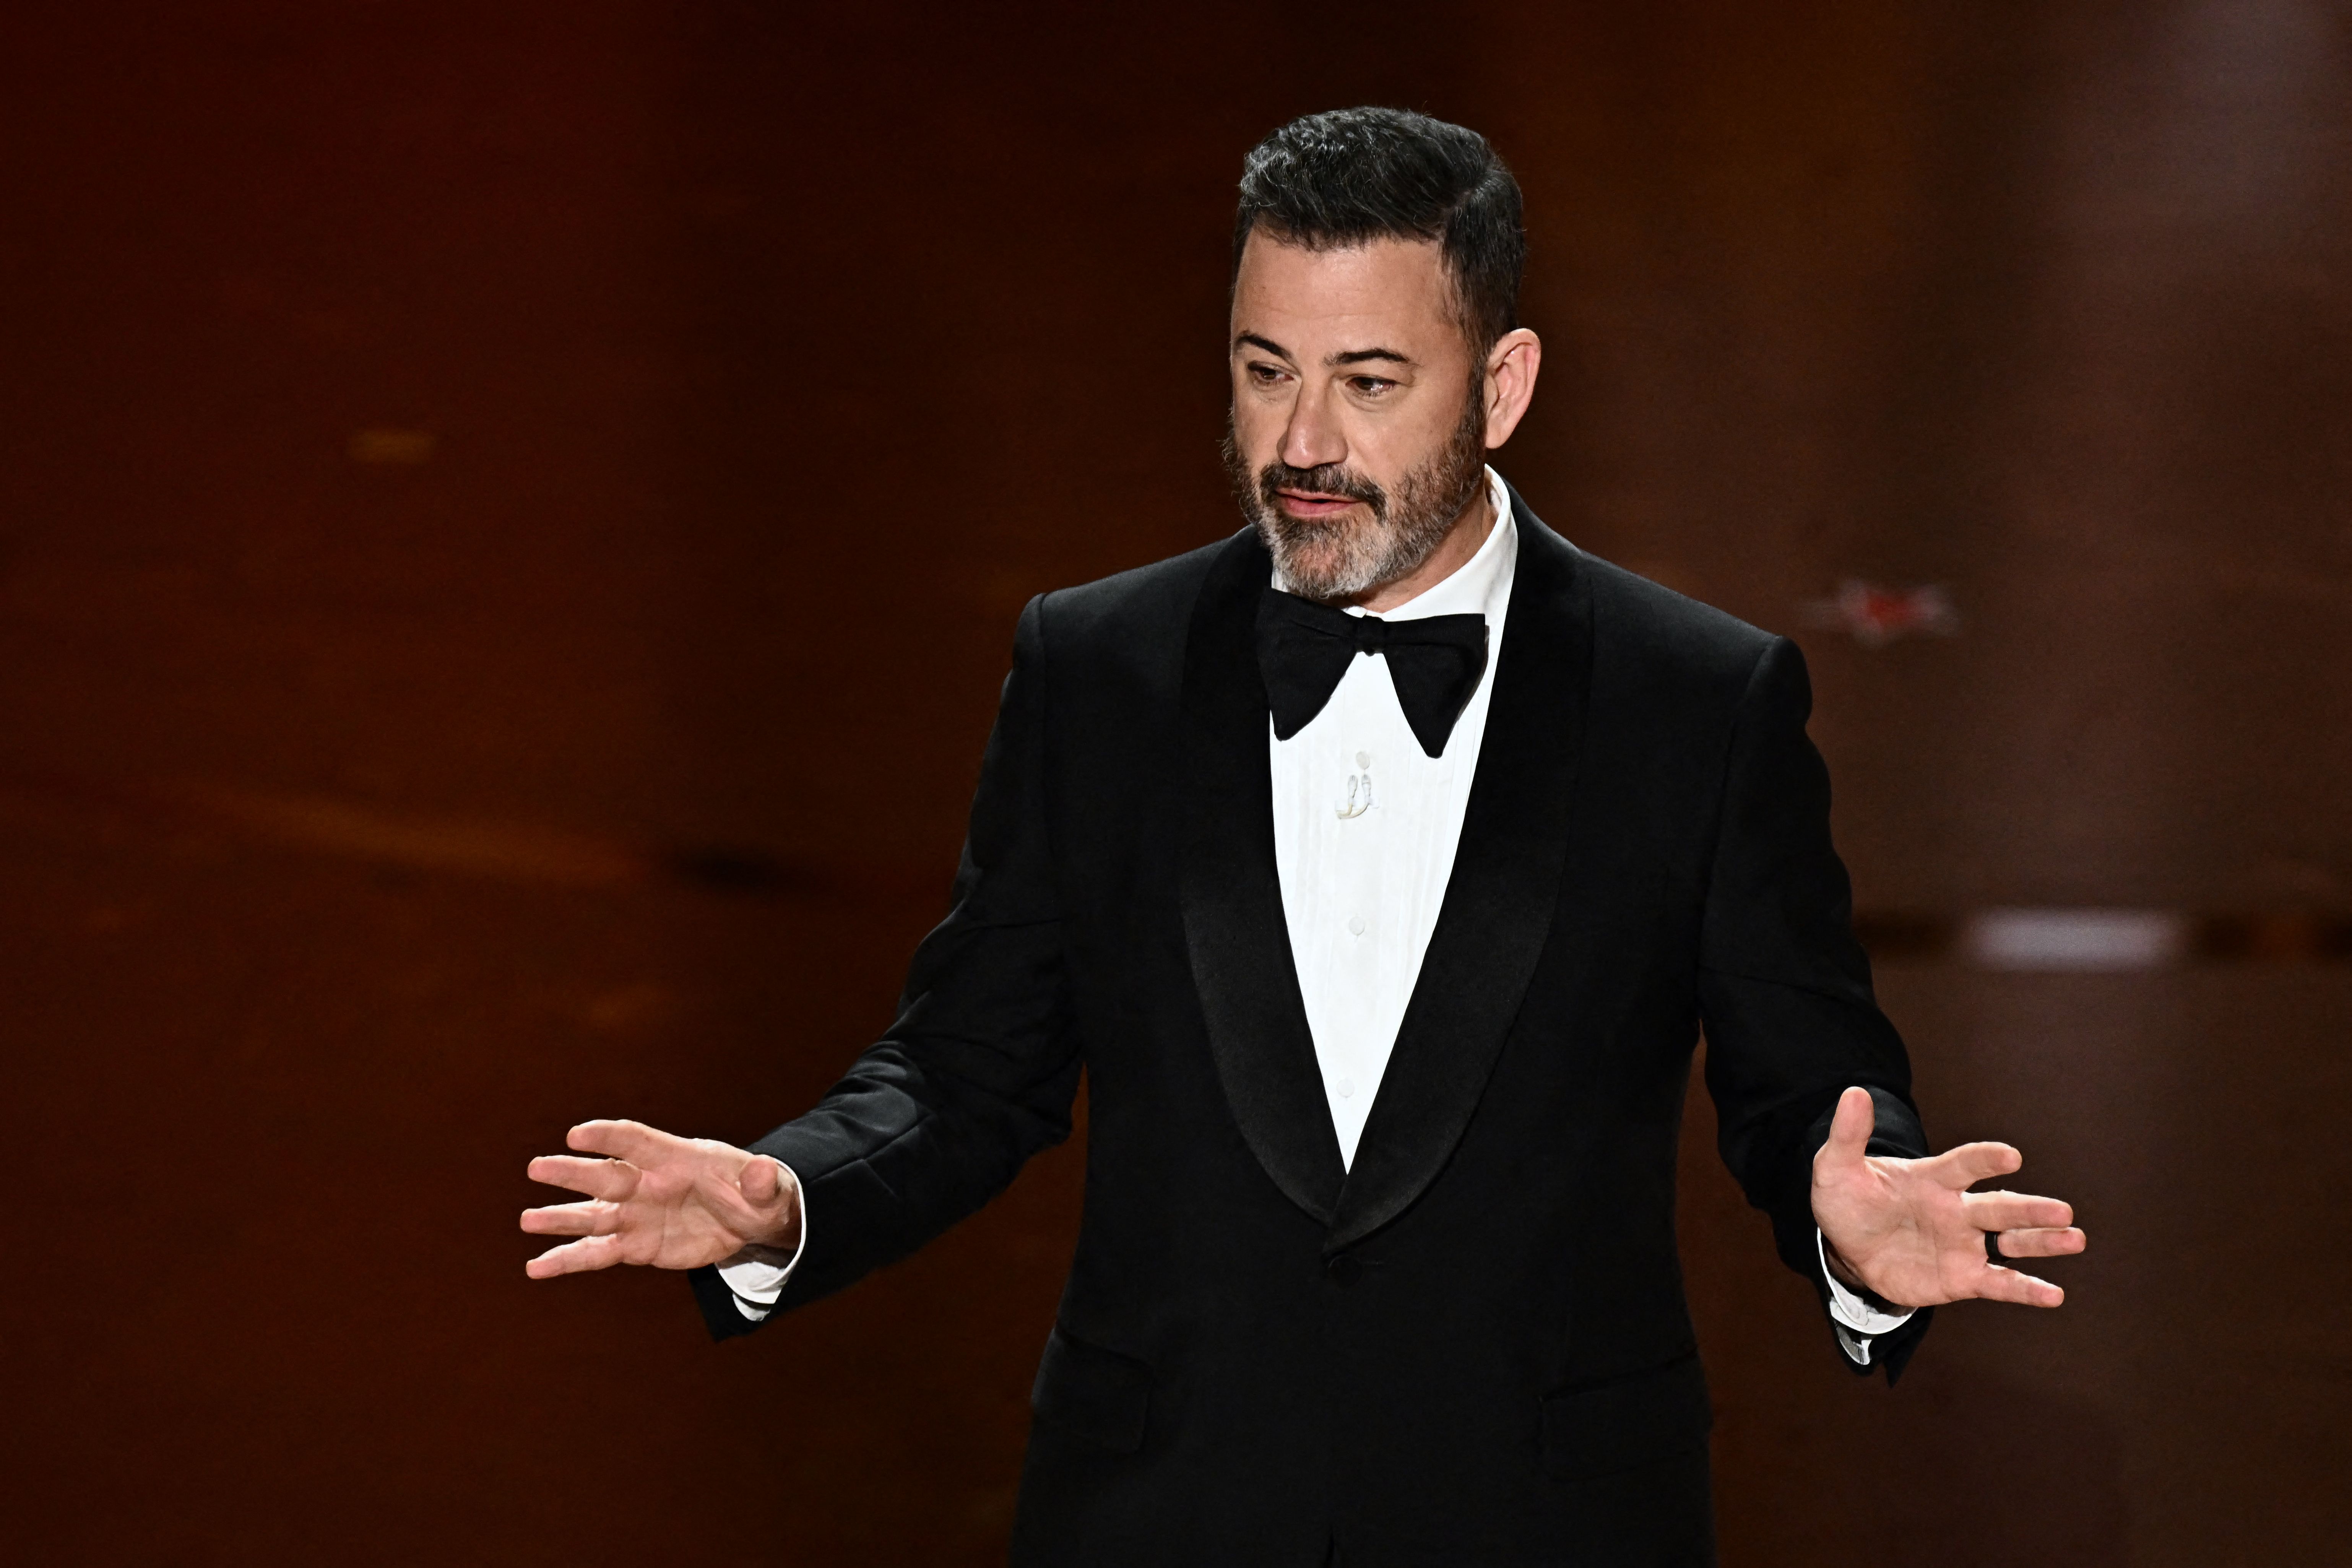 Jimmy Kimmel respondió a las críticas de Donald Trump por su actuación en la gala de los Premios Óscar